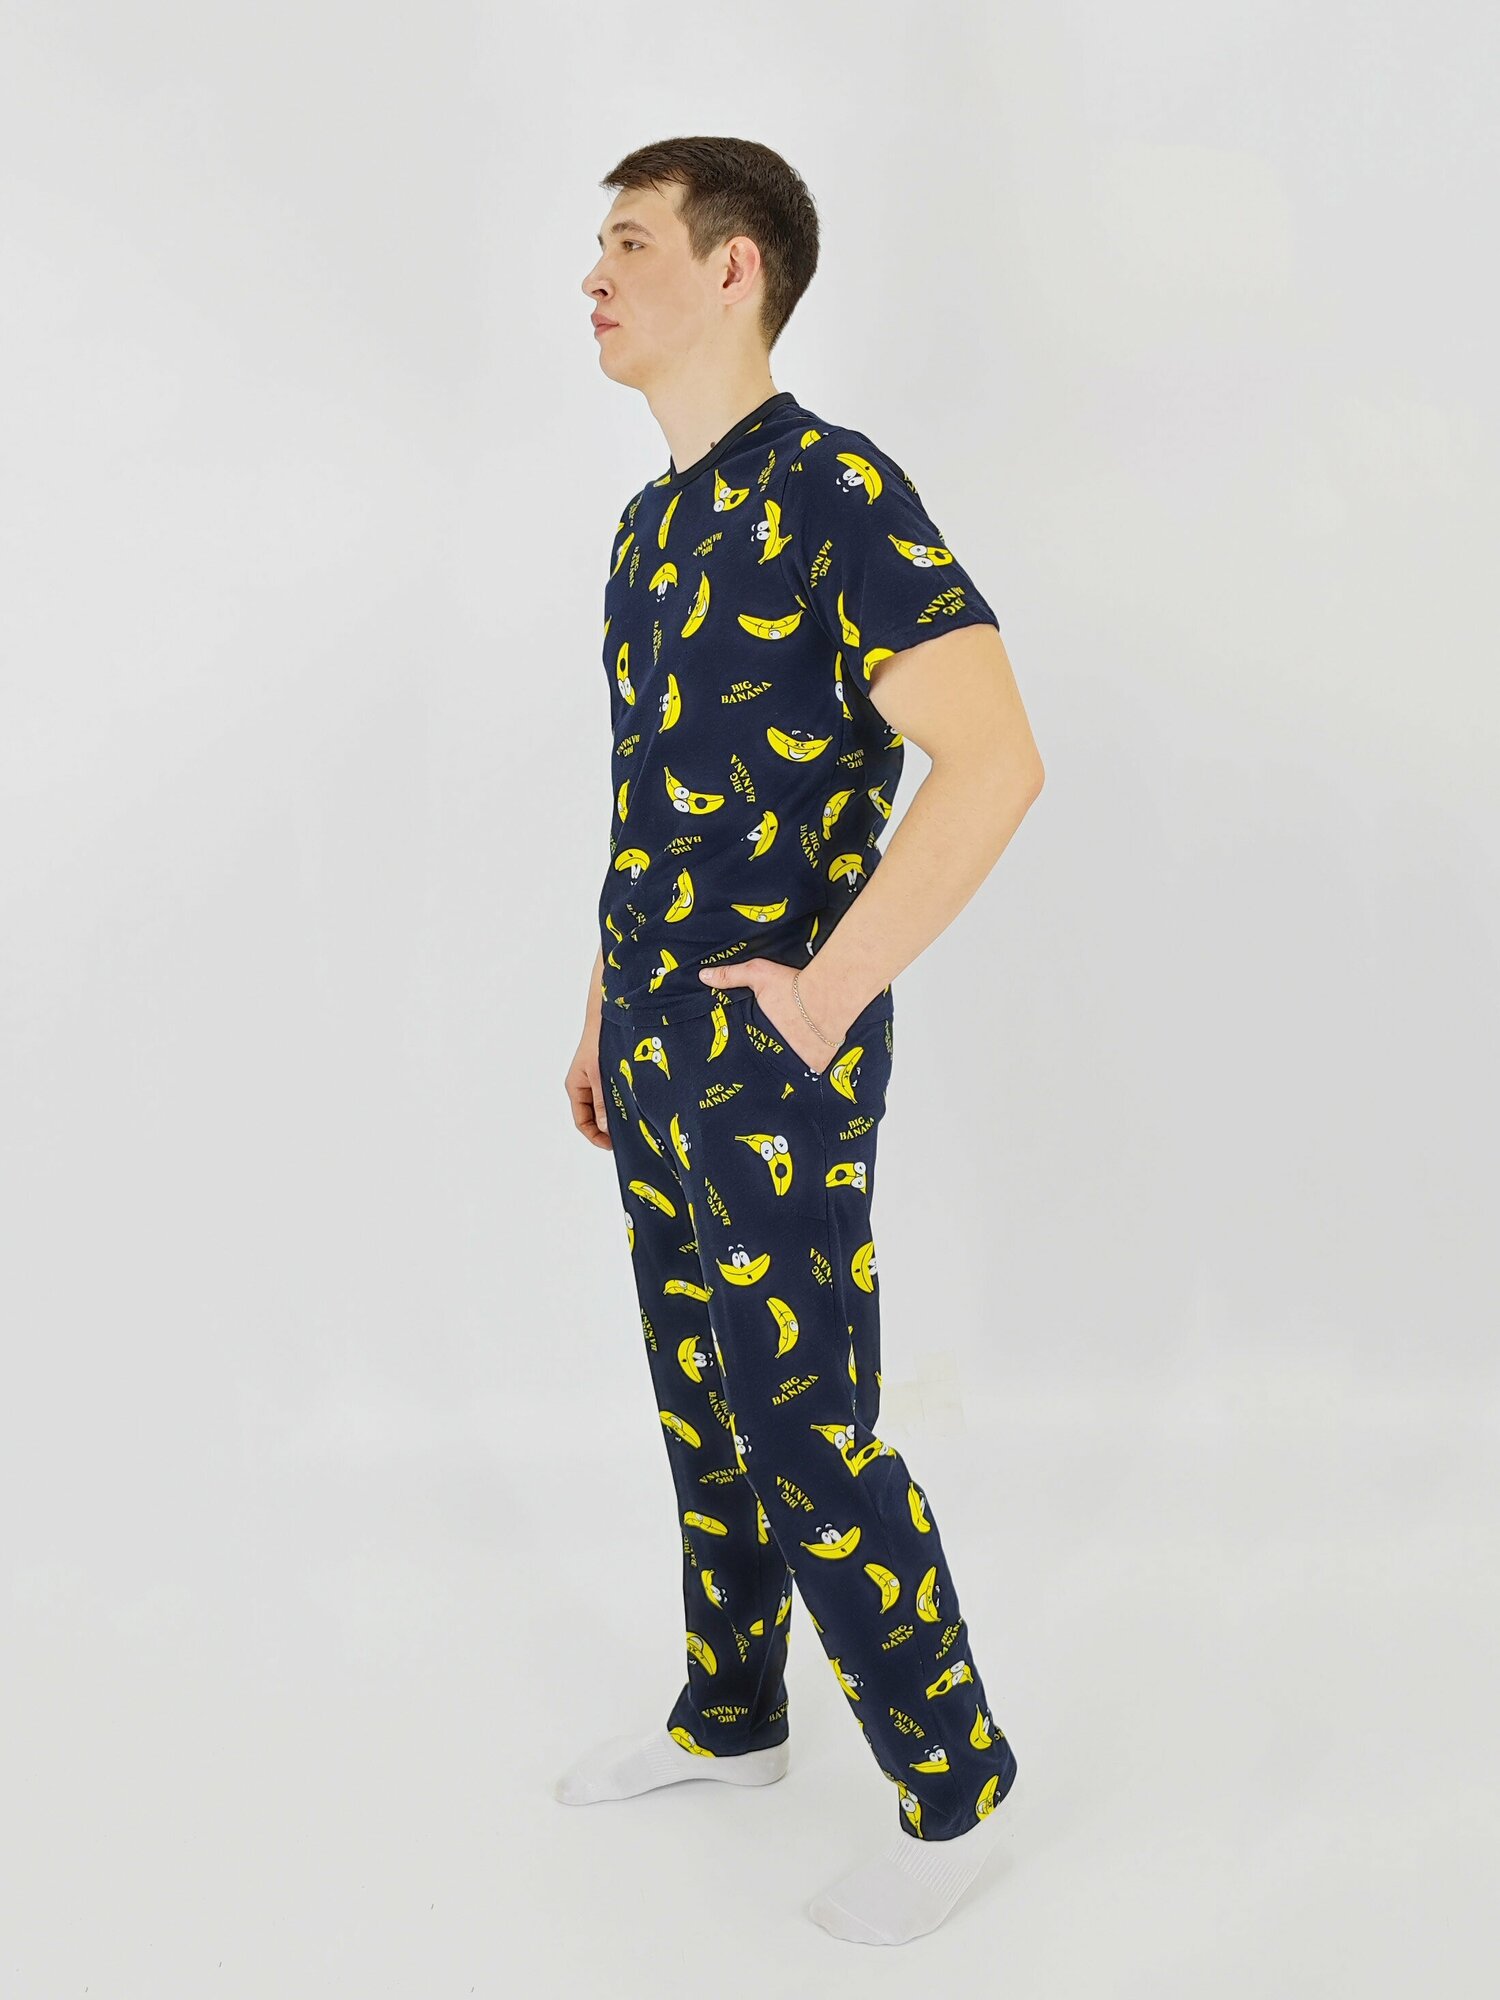 Мужская пижама, мужской пижамный комплект ARISTARHOV, Футболка + Брюки, Бананчик, синий желтый, размер 54 - фотография № 4